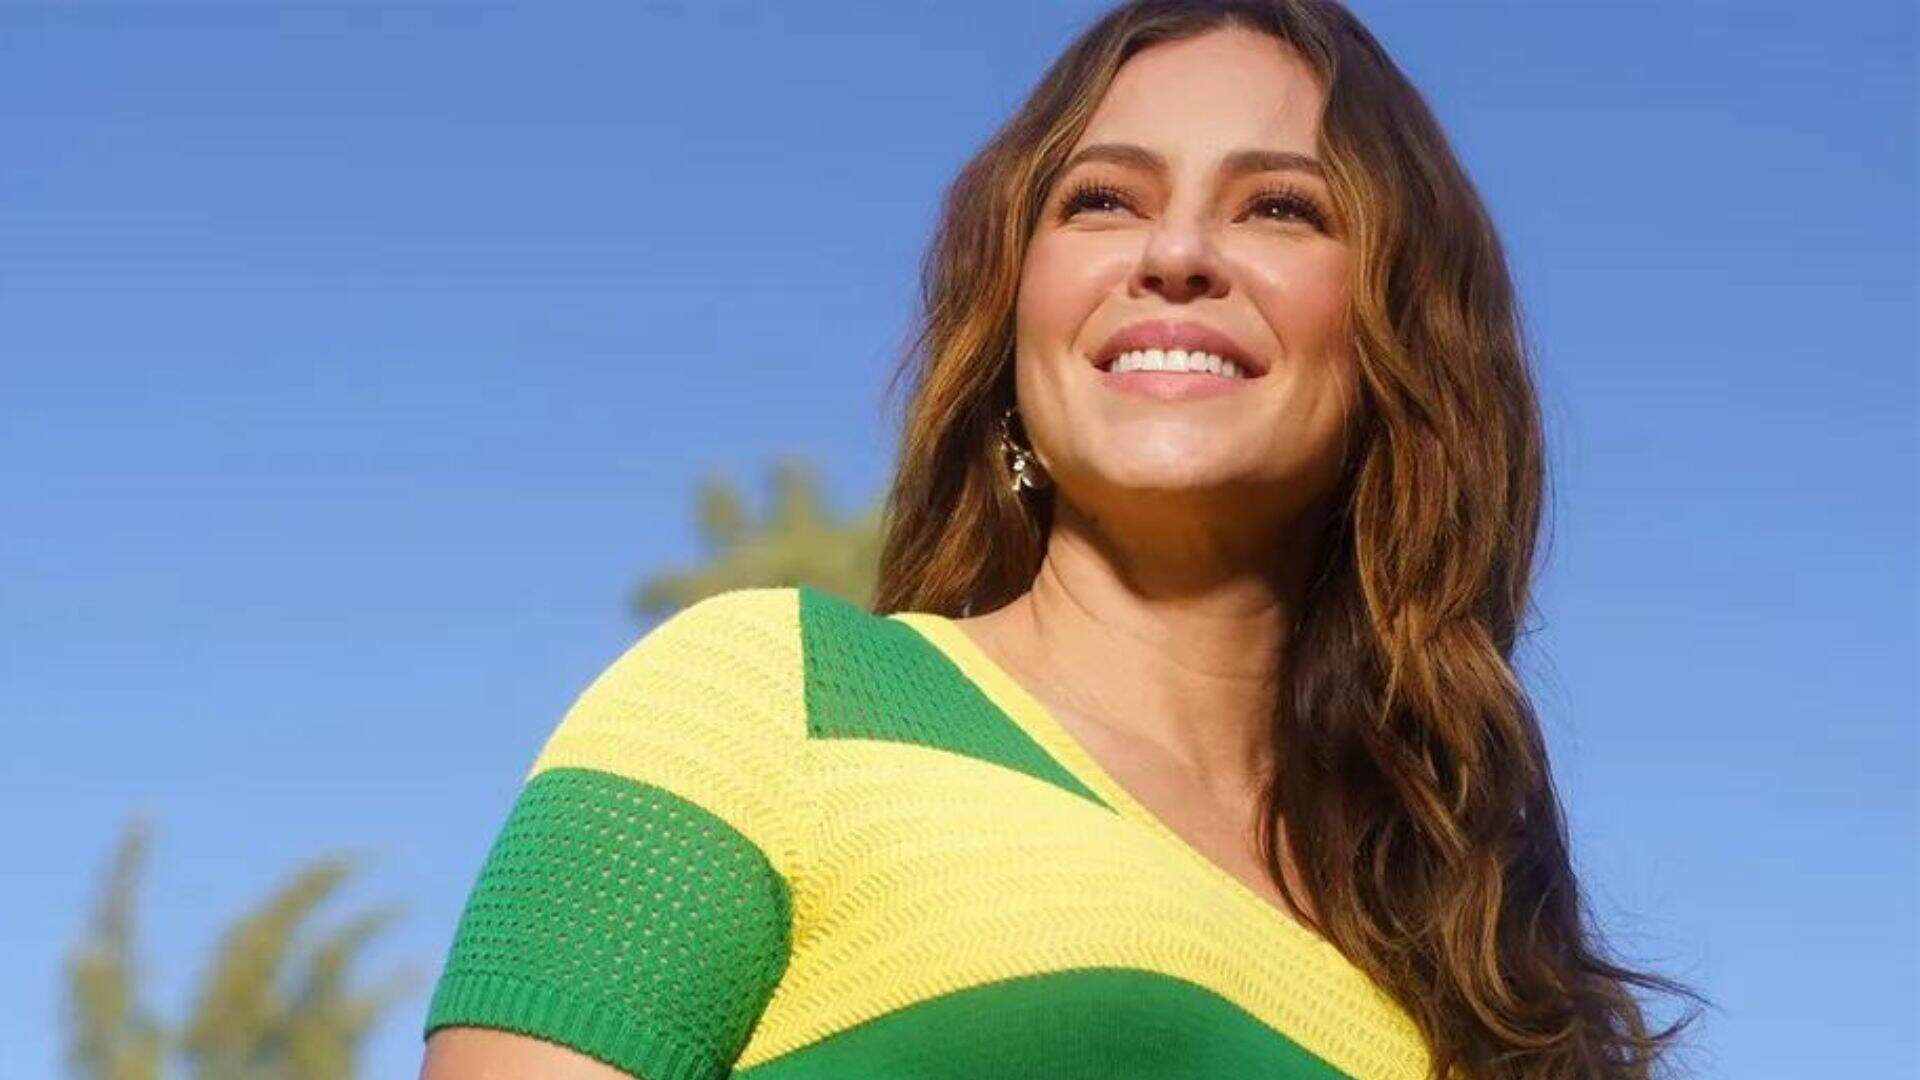 Orgulho Nacional! Paolla Oliveira se une à torcida da Seleção Feminina na Copa e usa look verde e amarelo - Metropolitana FM